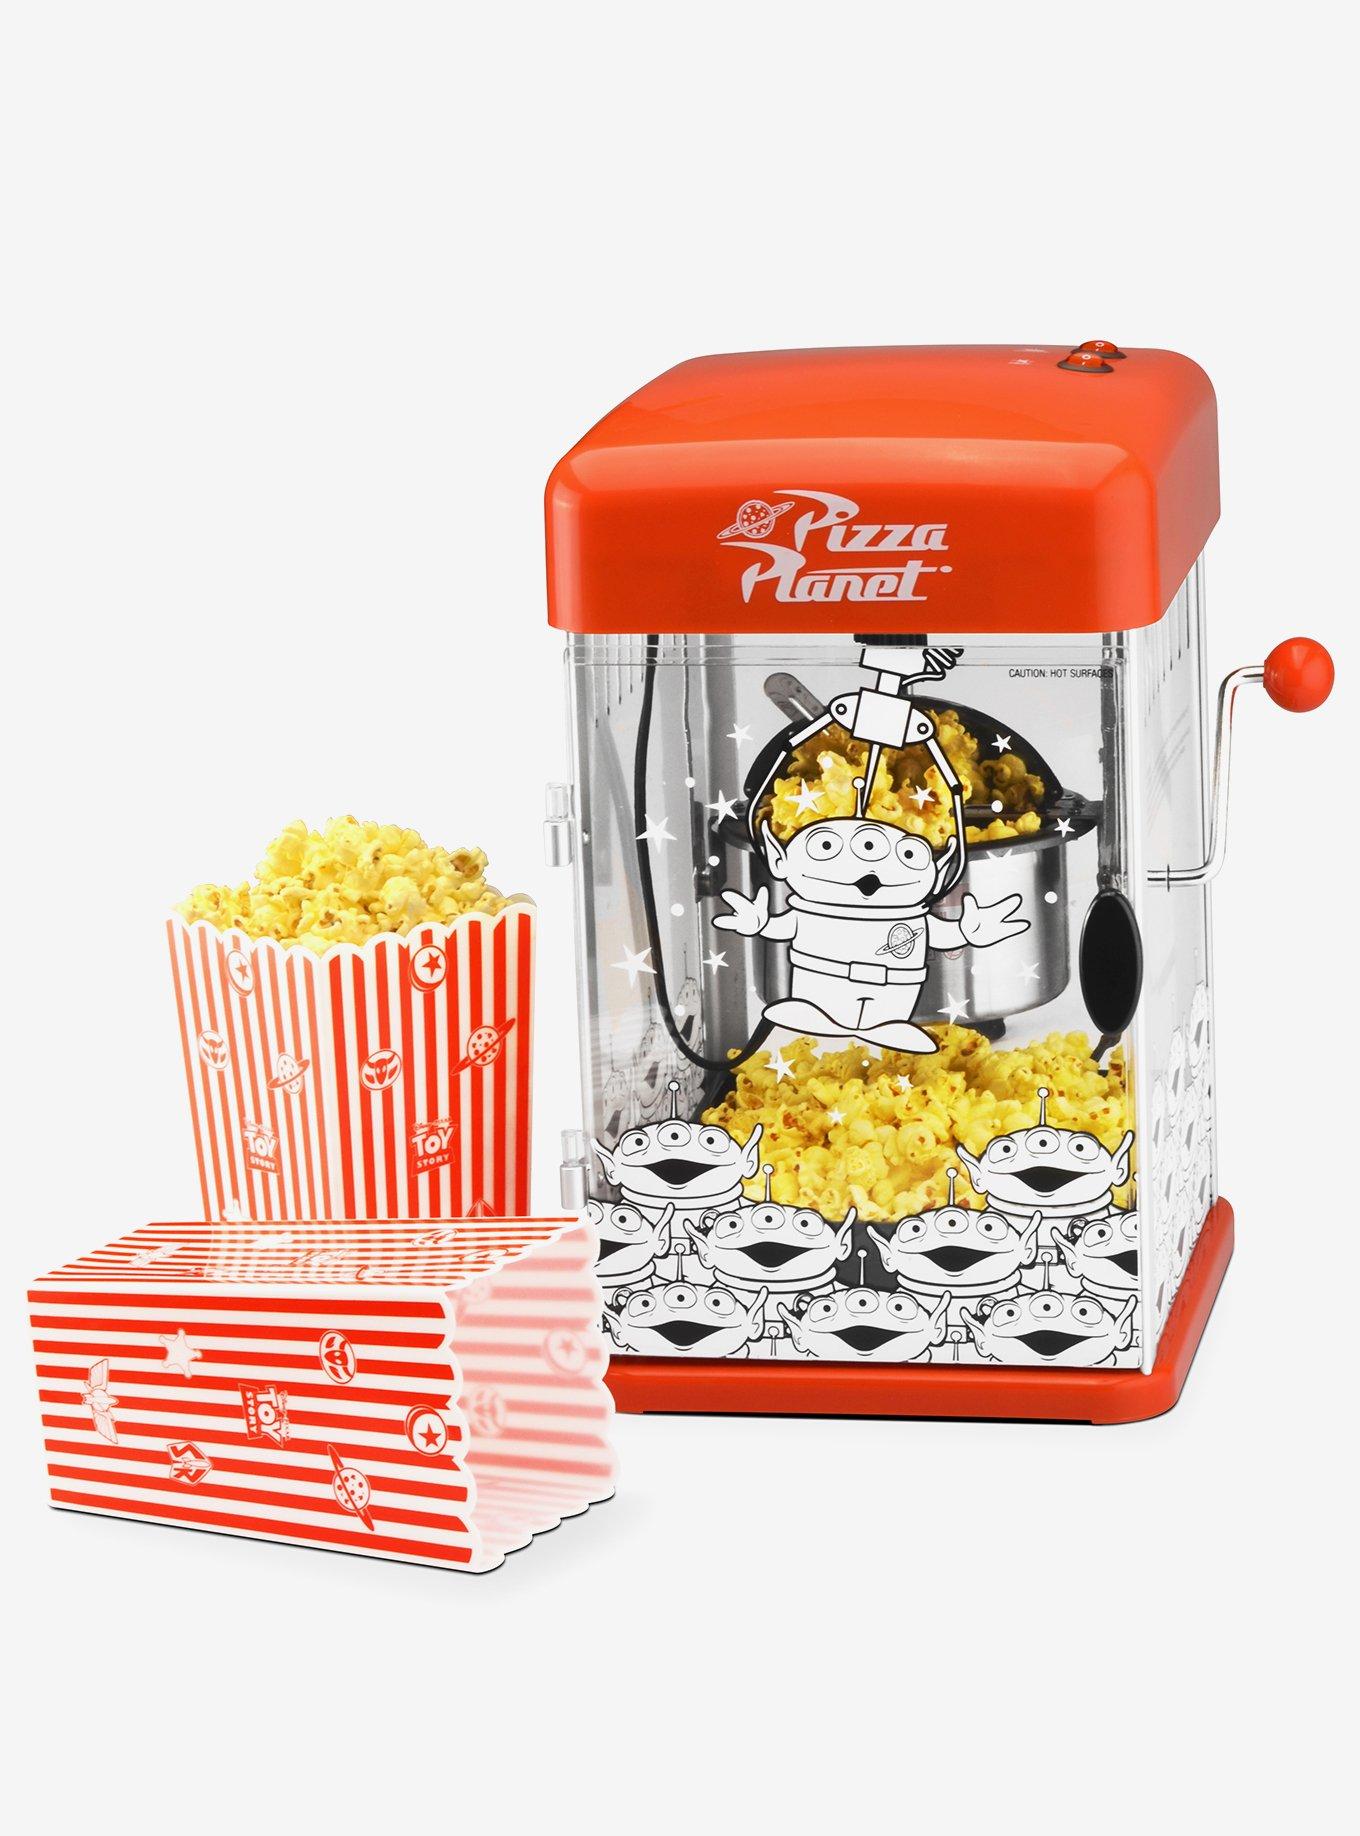 Mandalorian Popcorn Maker